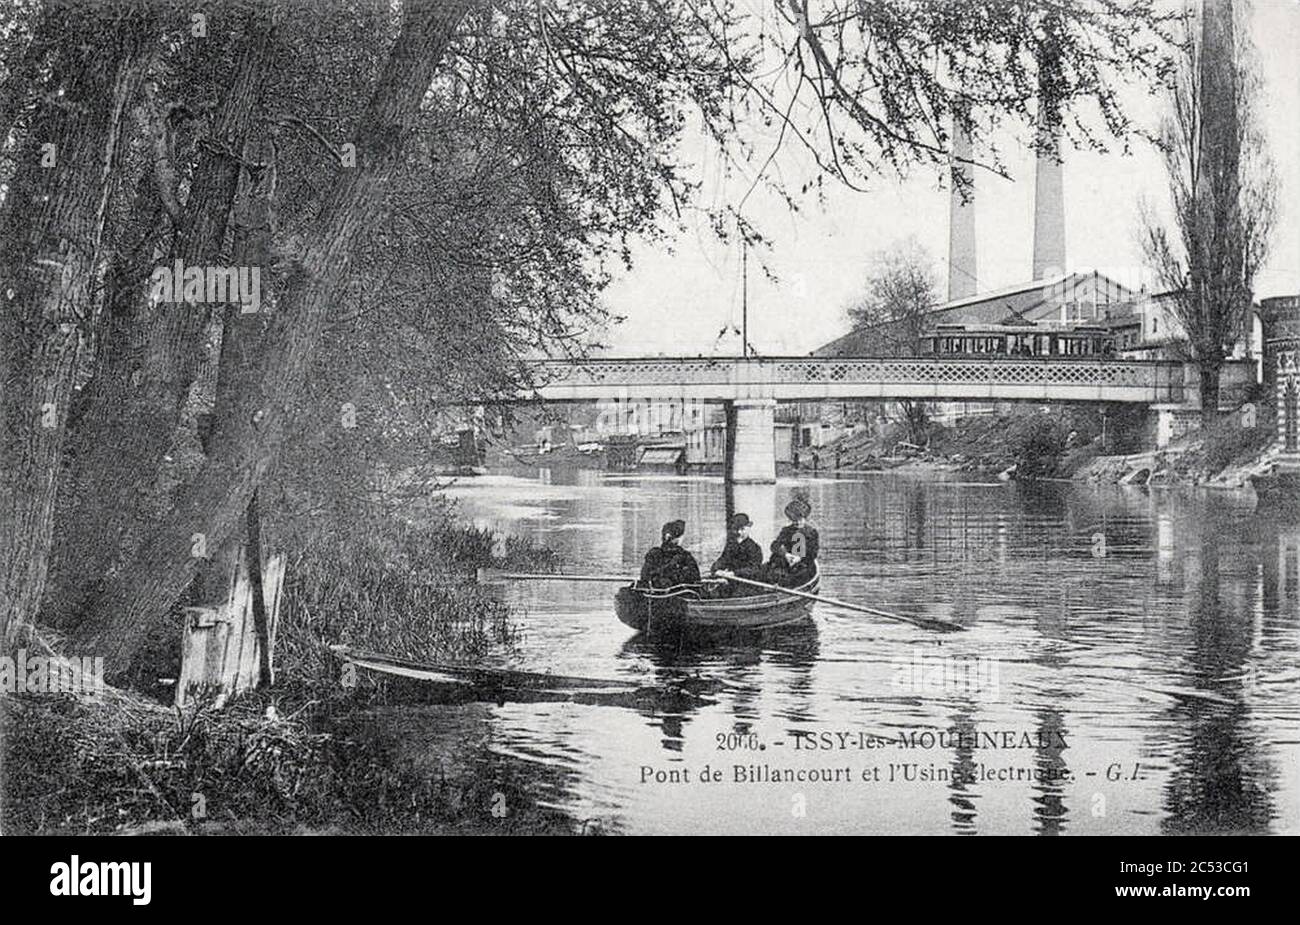 Issy-les-Moulineaux, Pont de Billancourt et l'usine électrique, carte postale diffusée en 1908. Banque D'Images